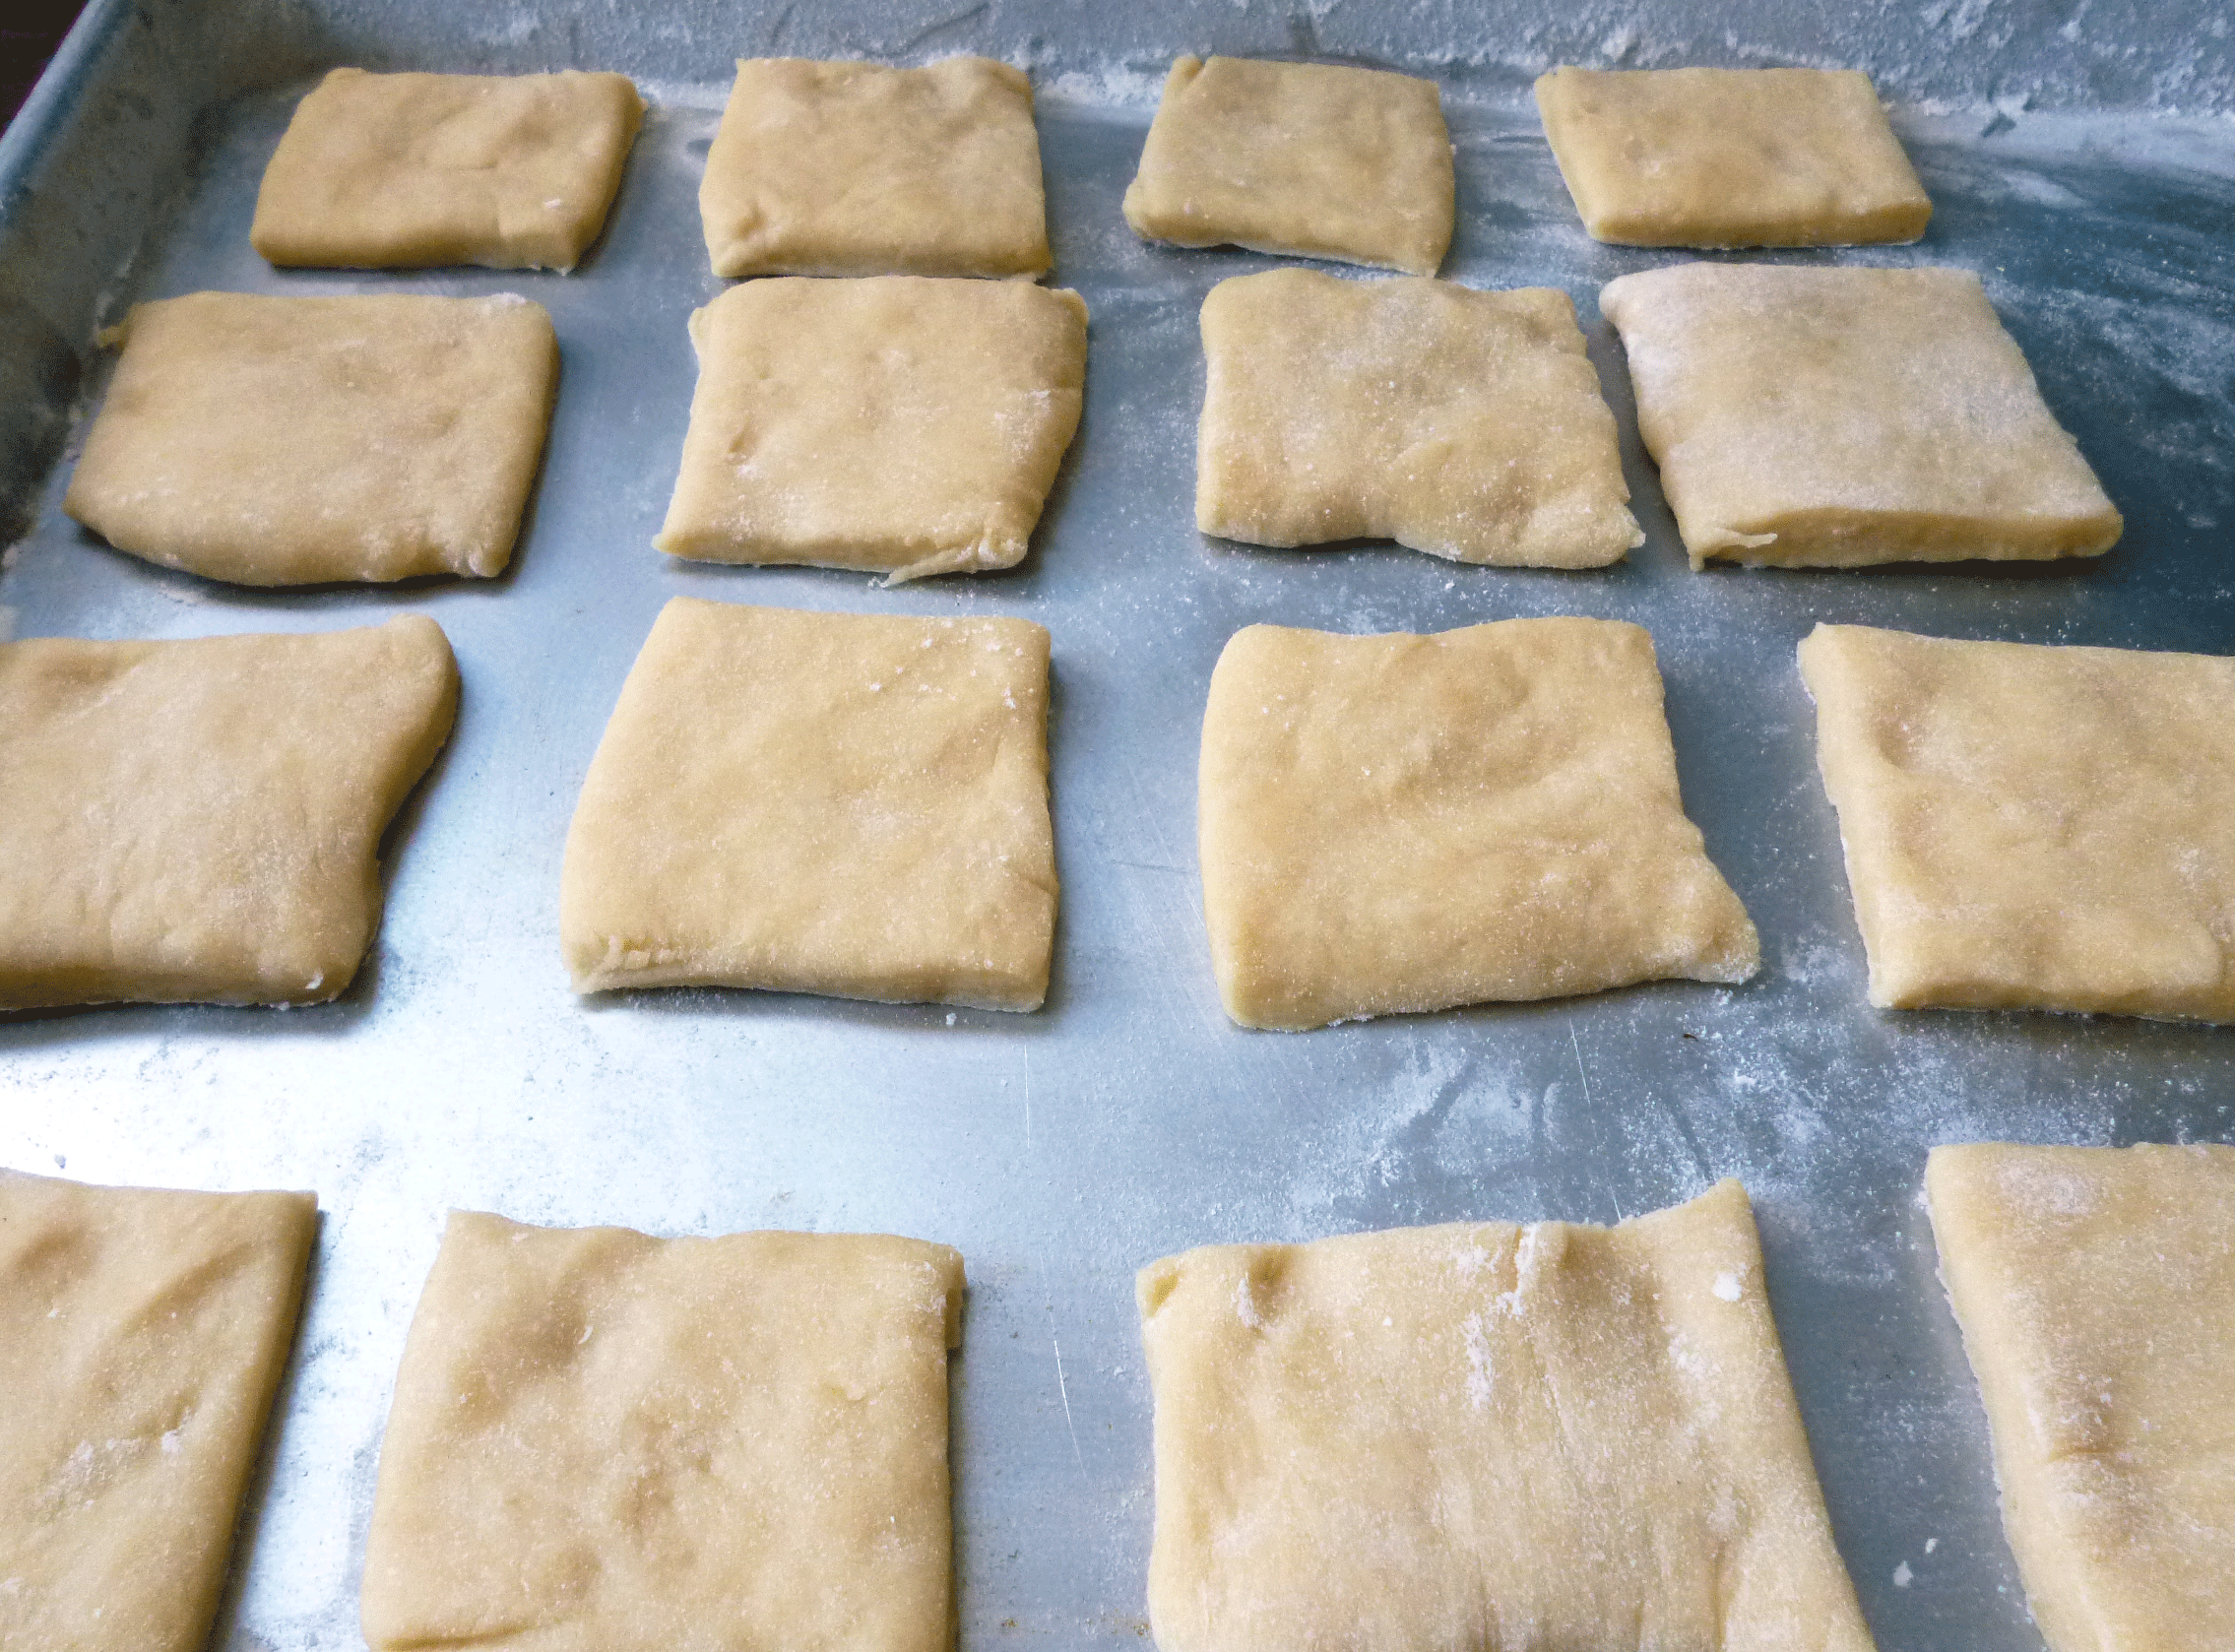 Squares of dough ready to fry. Photo: Stephanie Rosenbaum